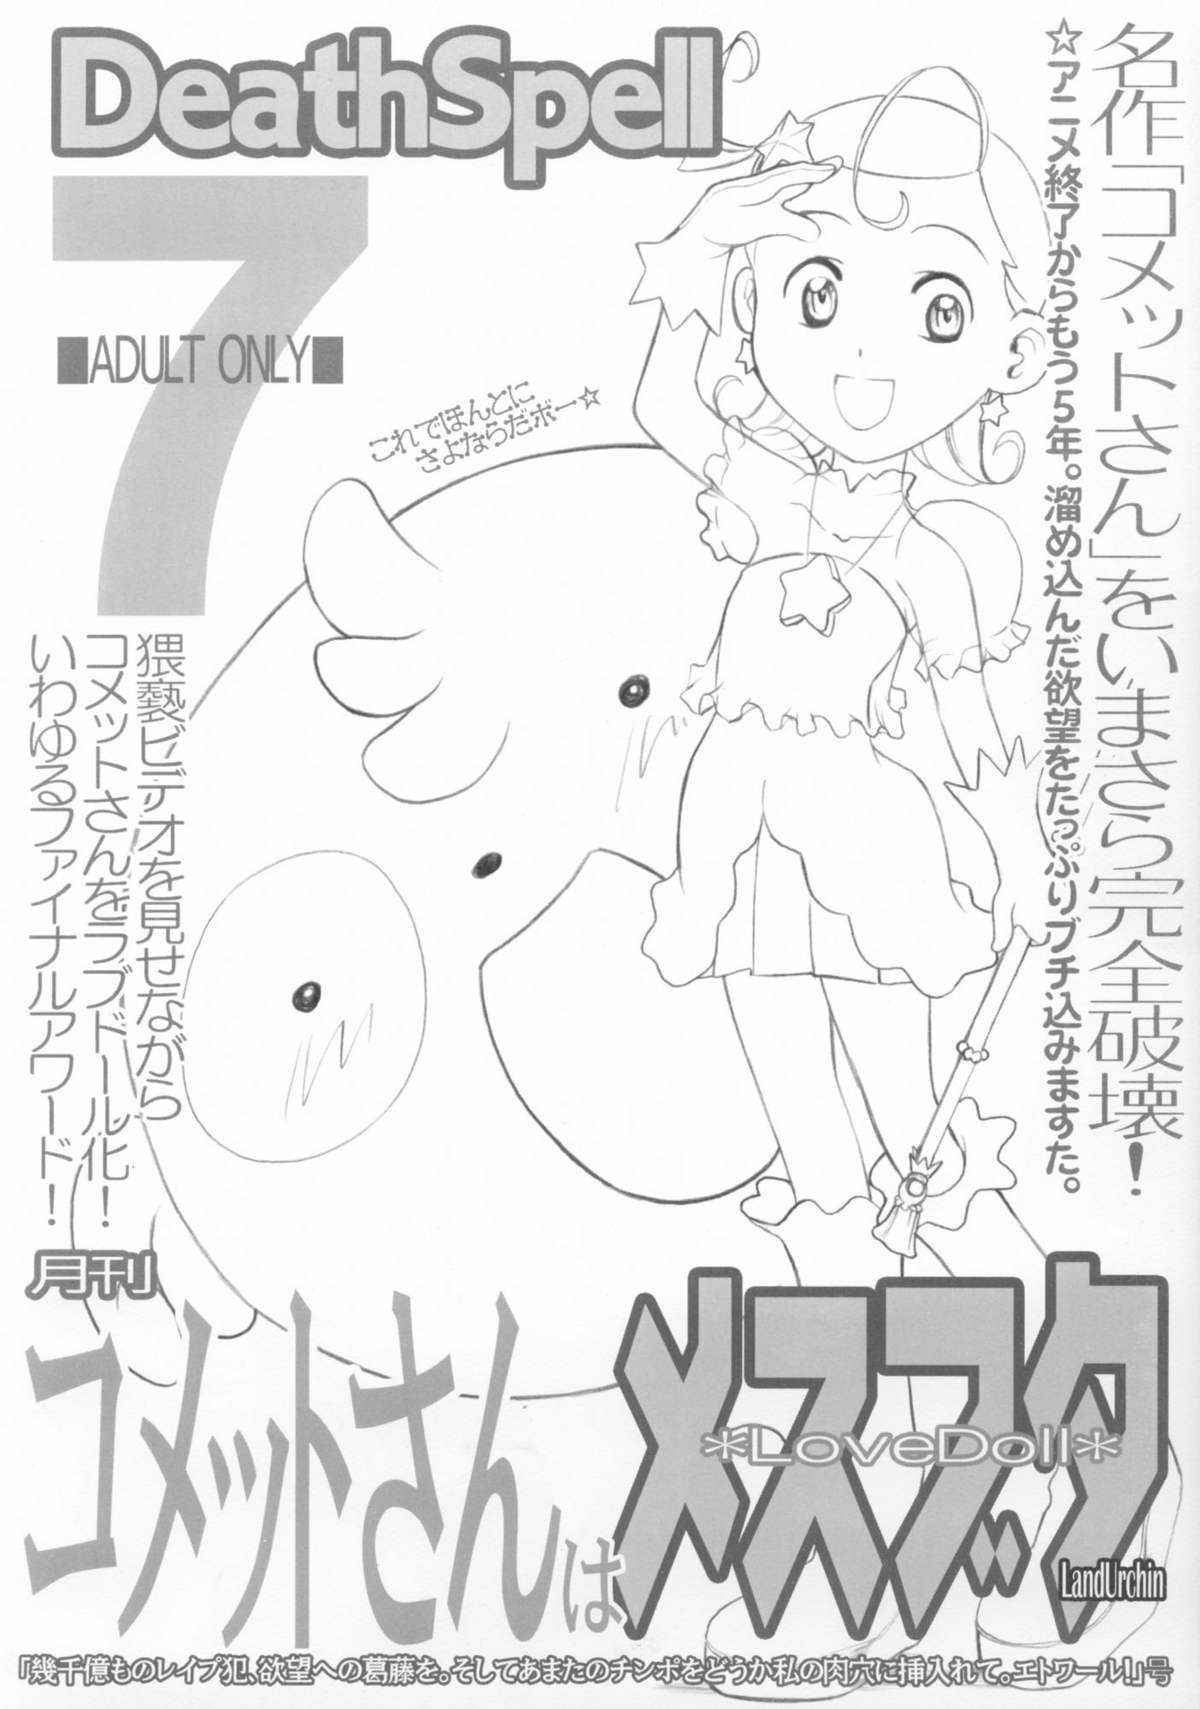 DeathSpell 7 コメットさんはメスブタ [Land Urchin (千鐘, ゴン平八)] (Cosmic Baton Girl コメットさん☆) 0